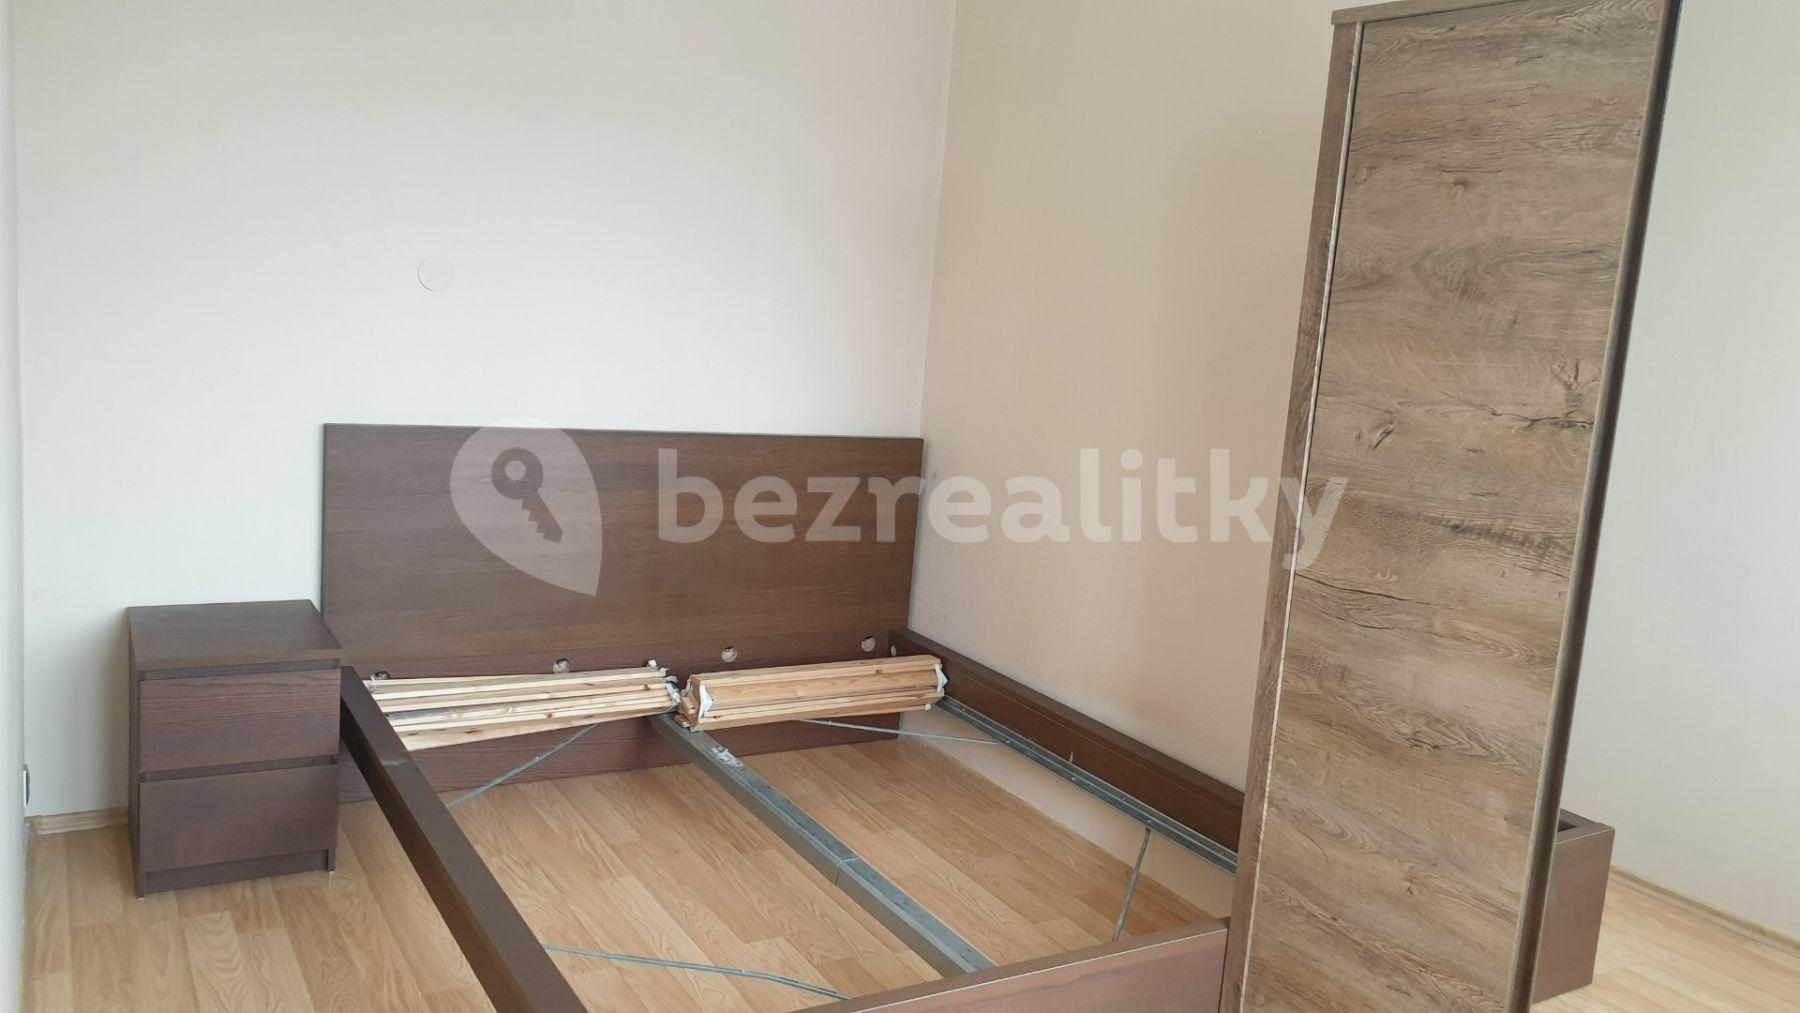 1 bedroom with open-plan kitchen flat for sale, 40 m², Revoluční, Libochovice, Ústecký Region